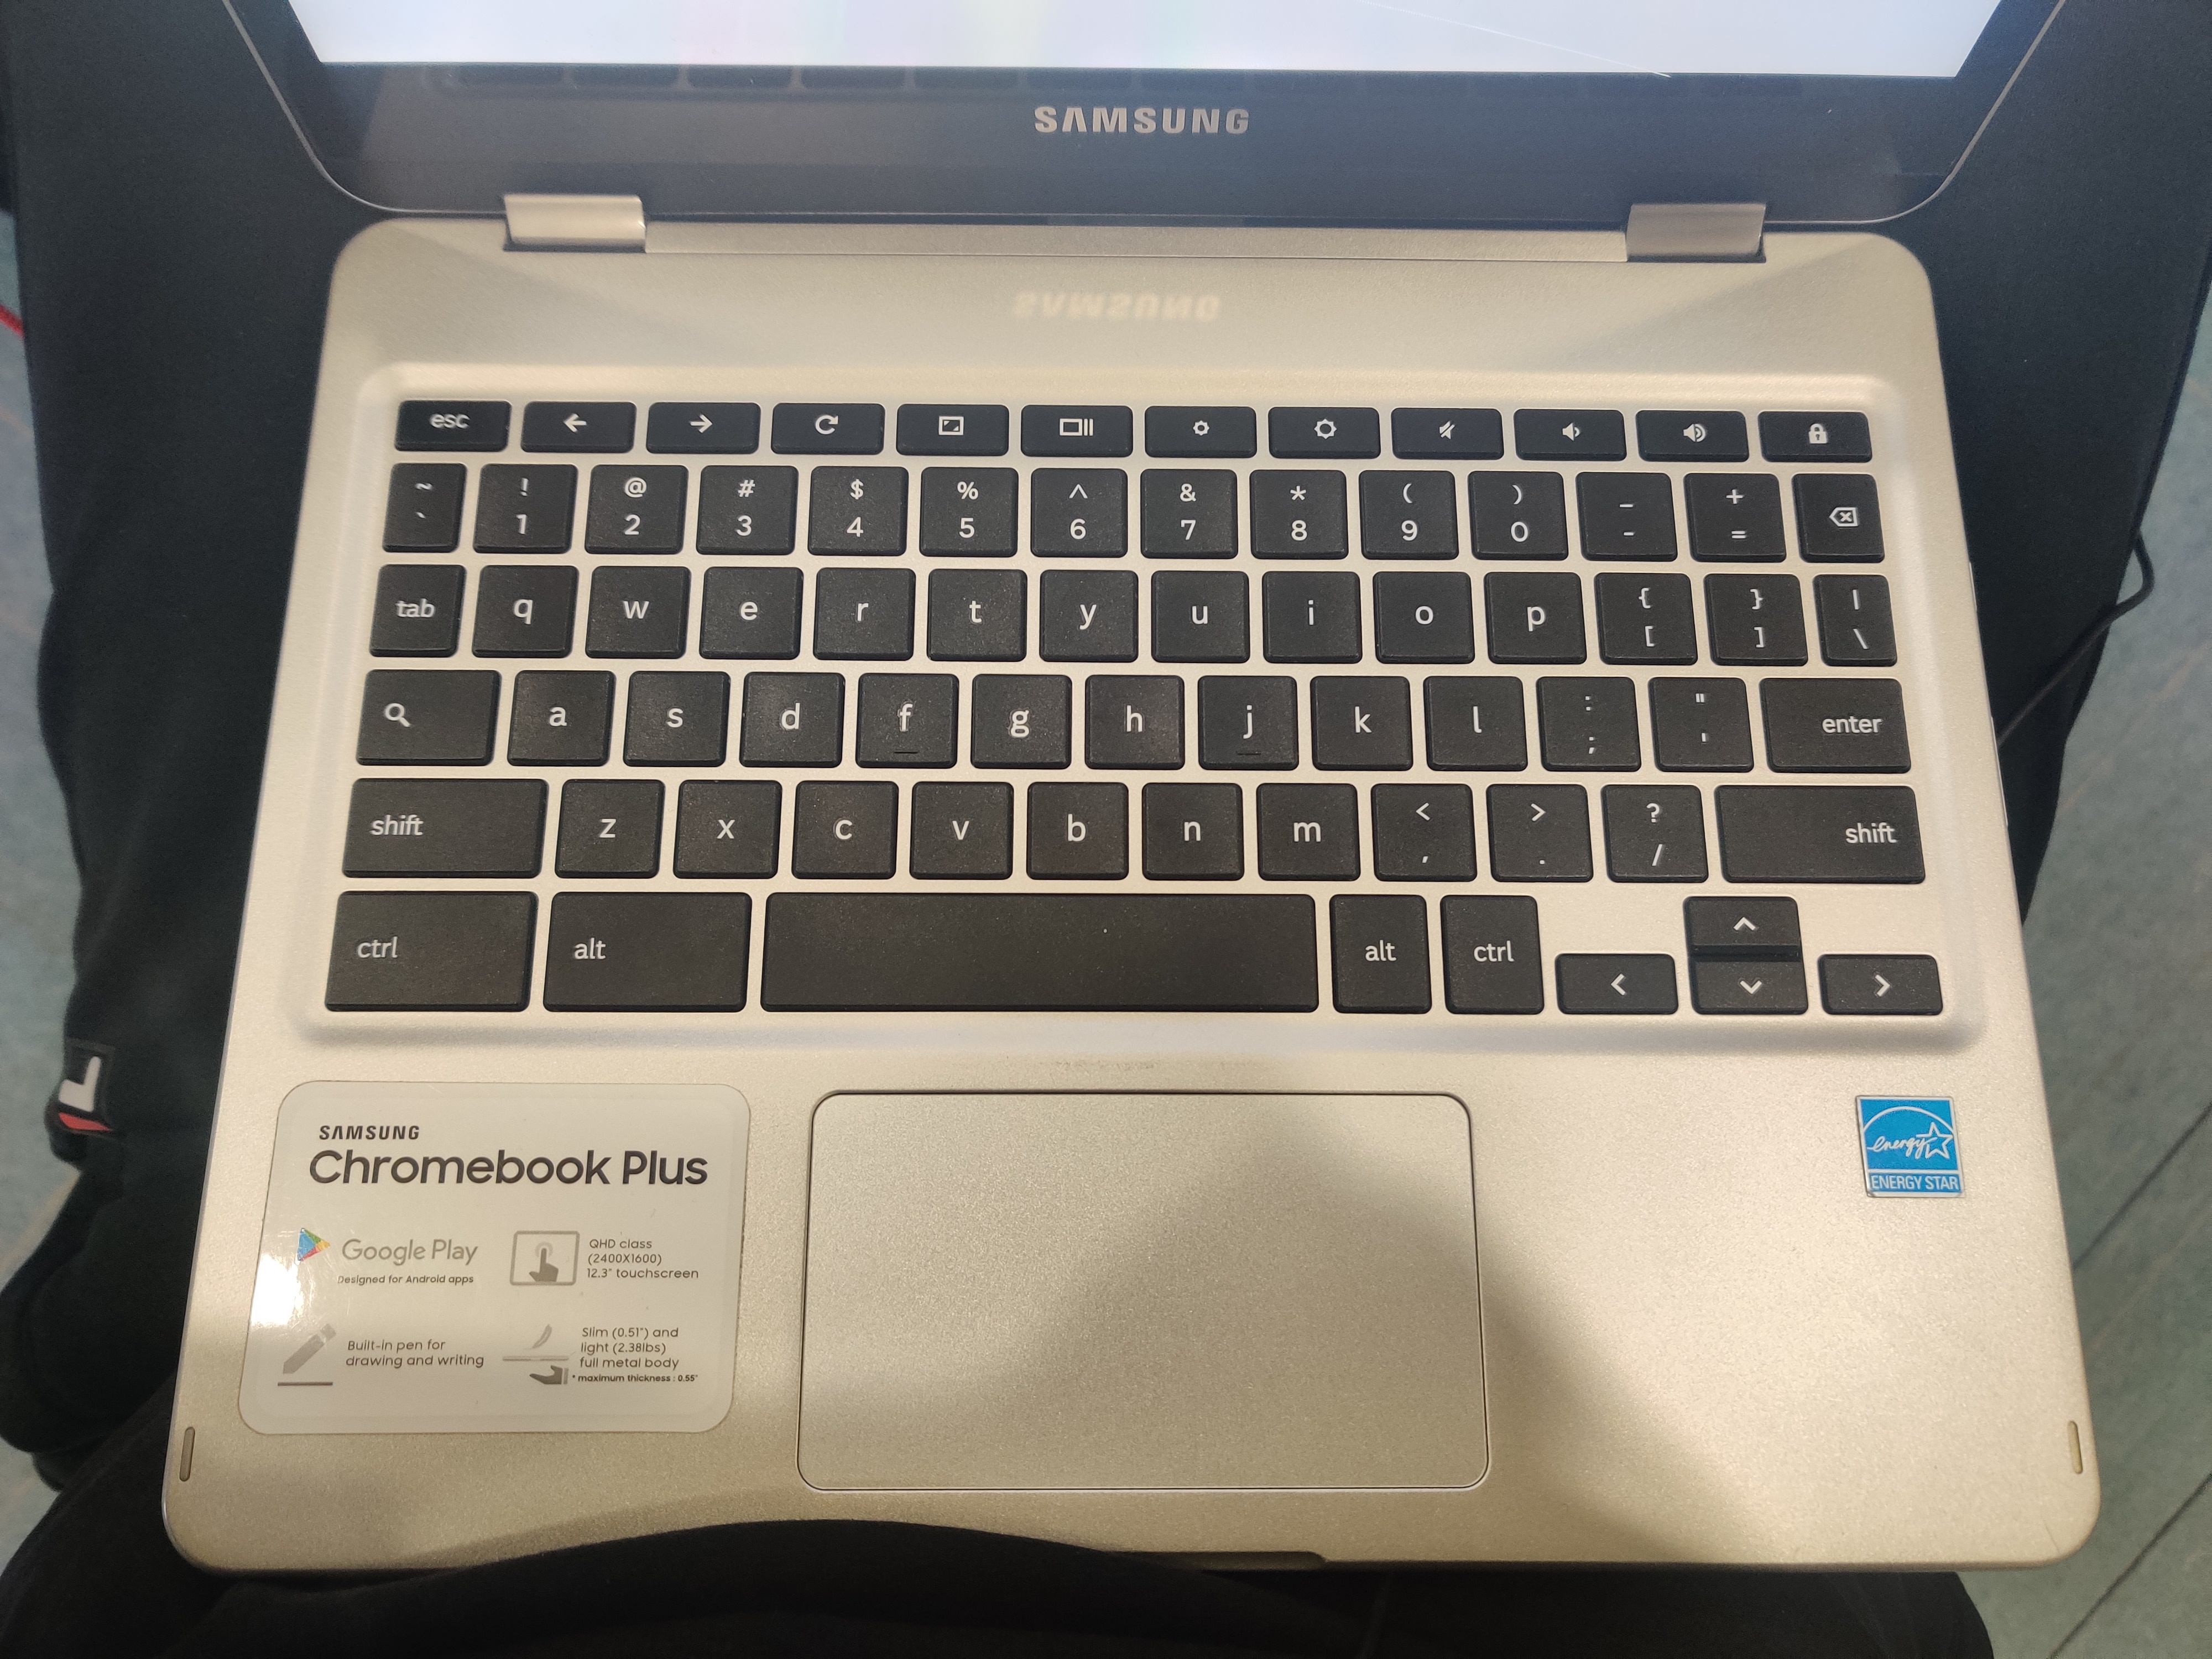 Keyboard and Trackpad